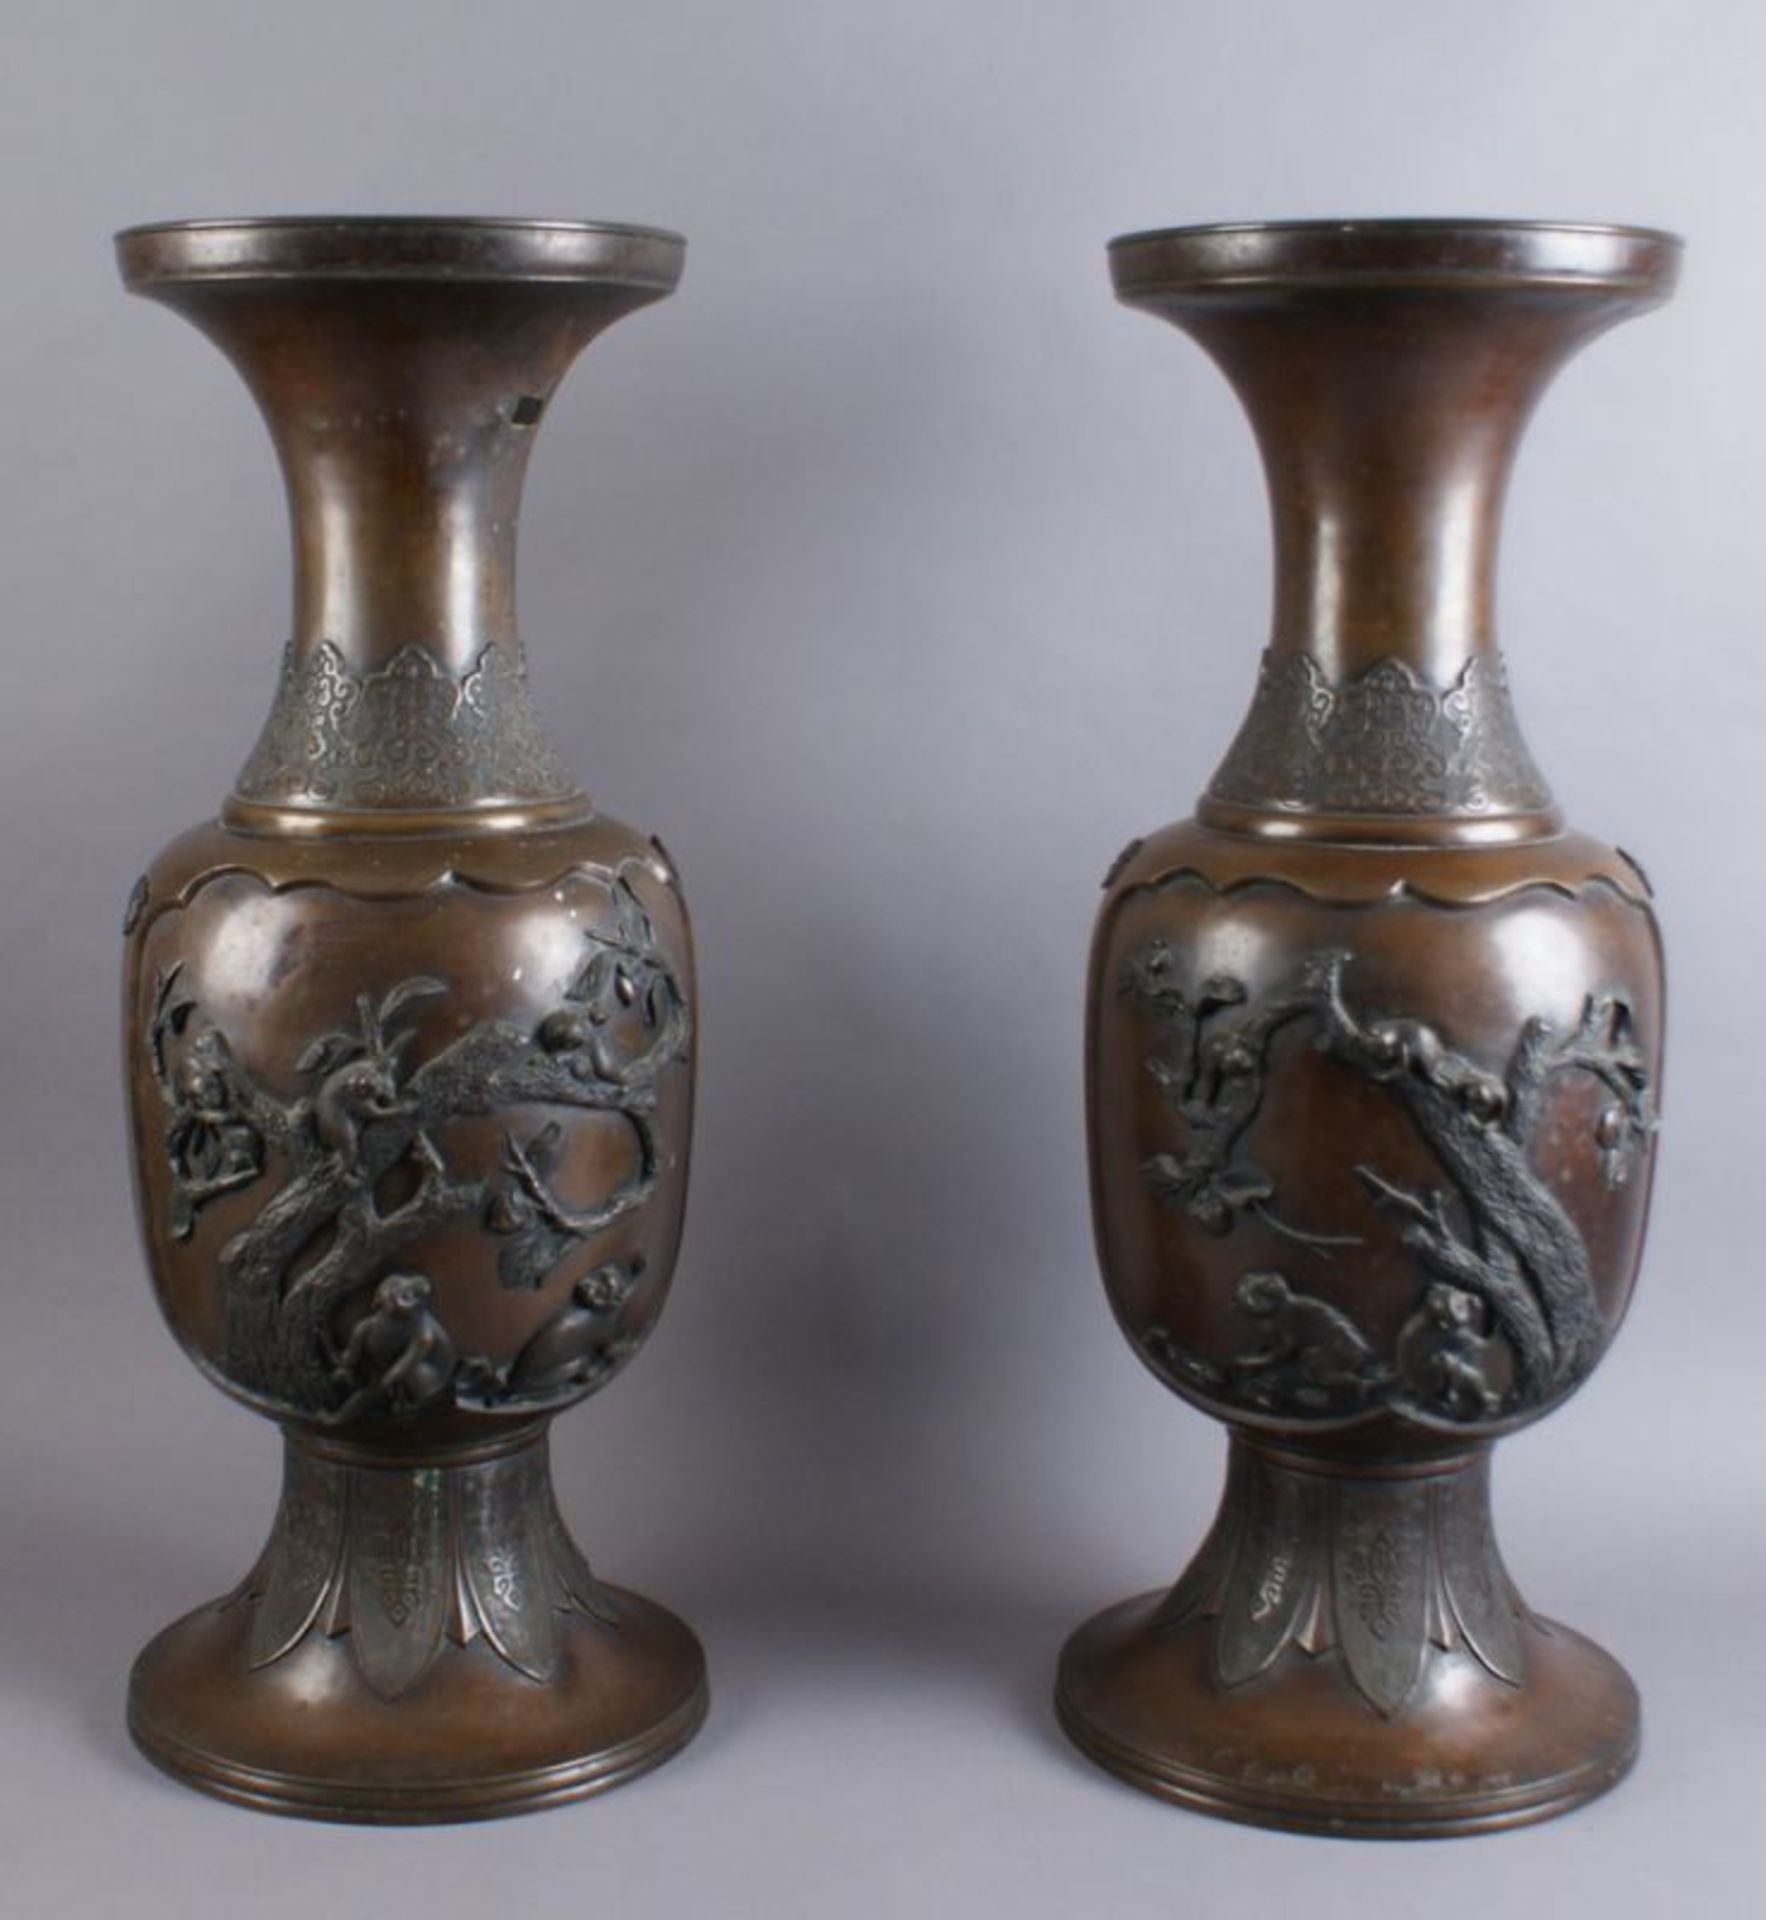 PAAR BRONZE VASEN Japan, 19. JH, zwei grosse Vasen mit Reliefdekor, Darstellung von spielenden Affen - Bild 9 aus 11